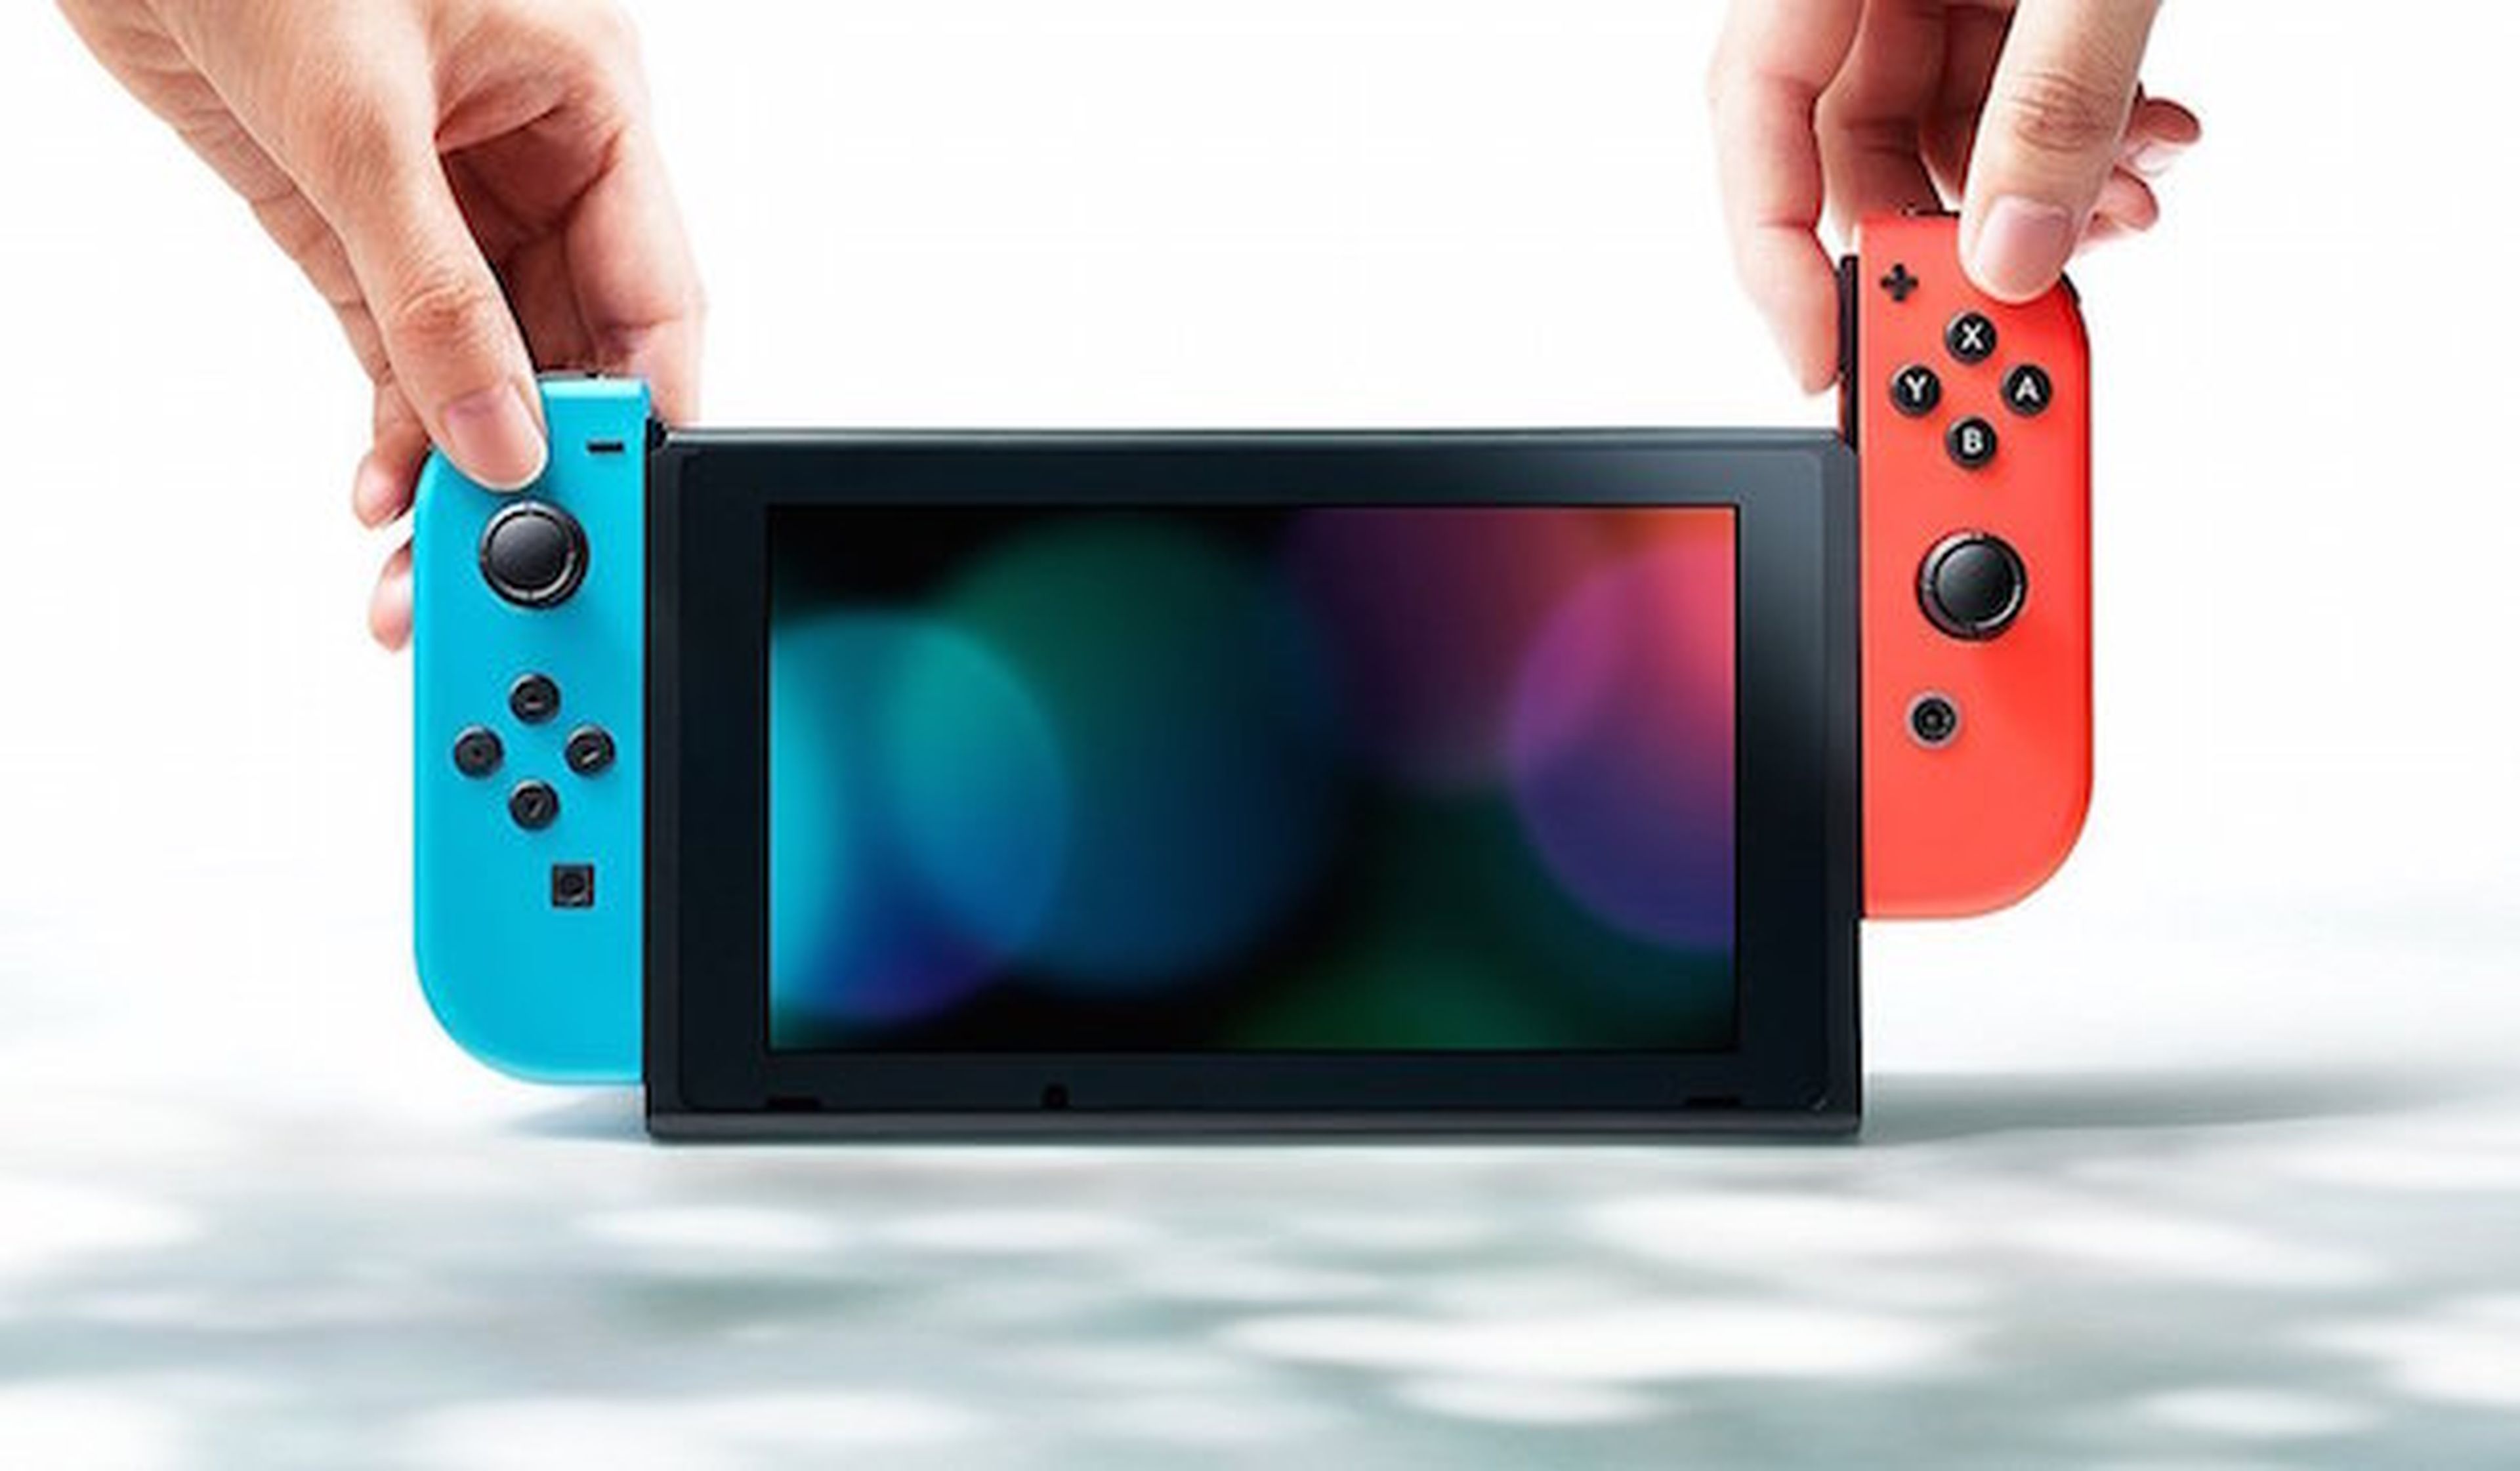 Regalos día del padre 2018 - Nintendo Switch